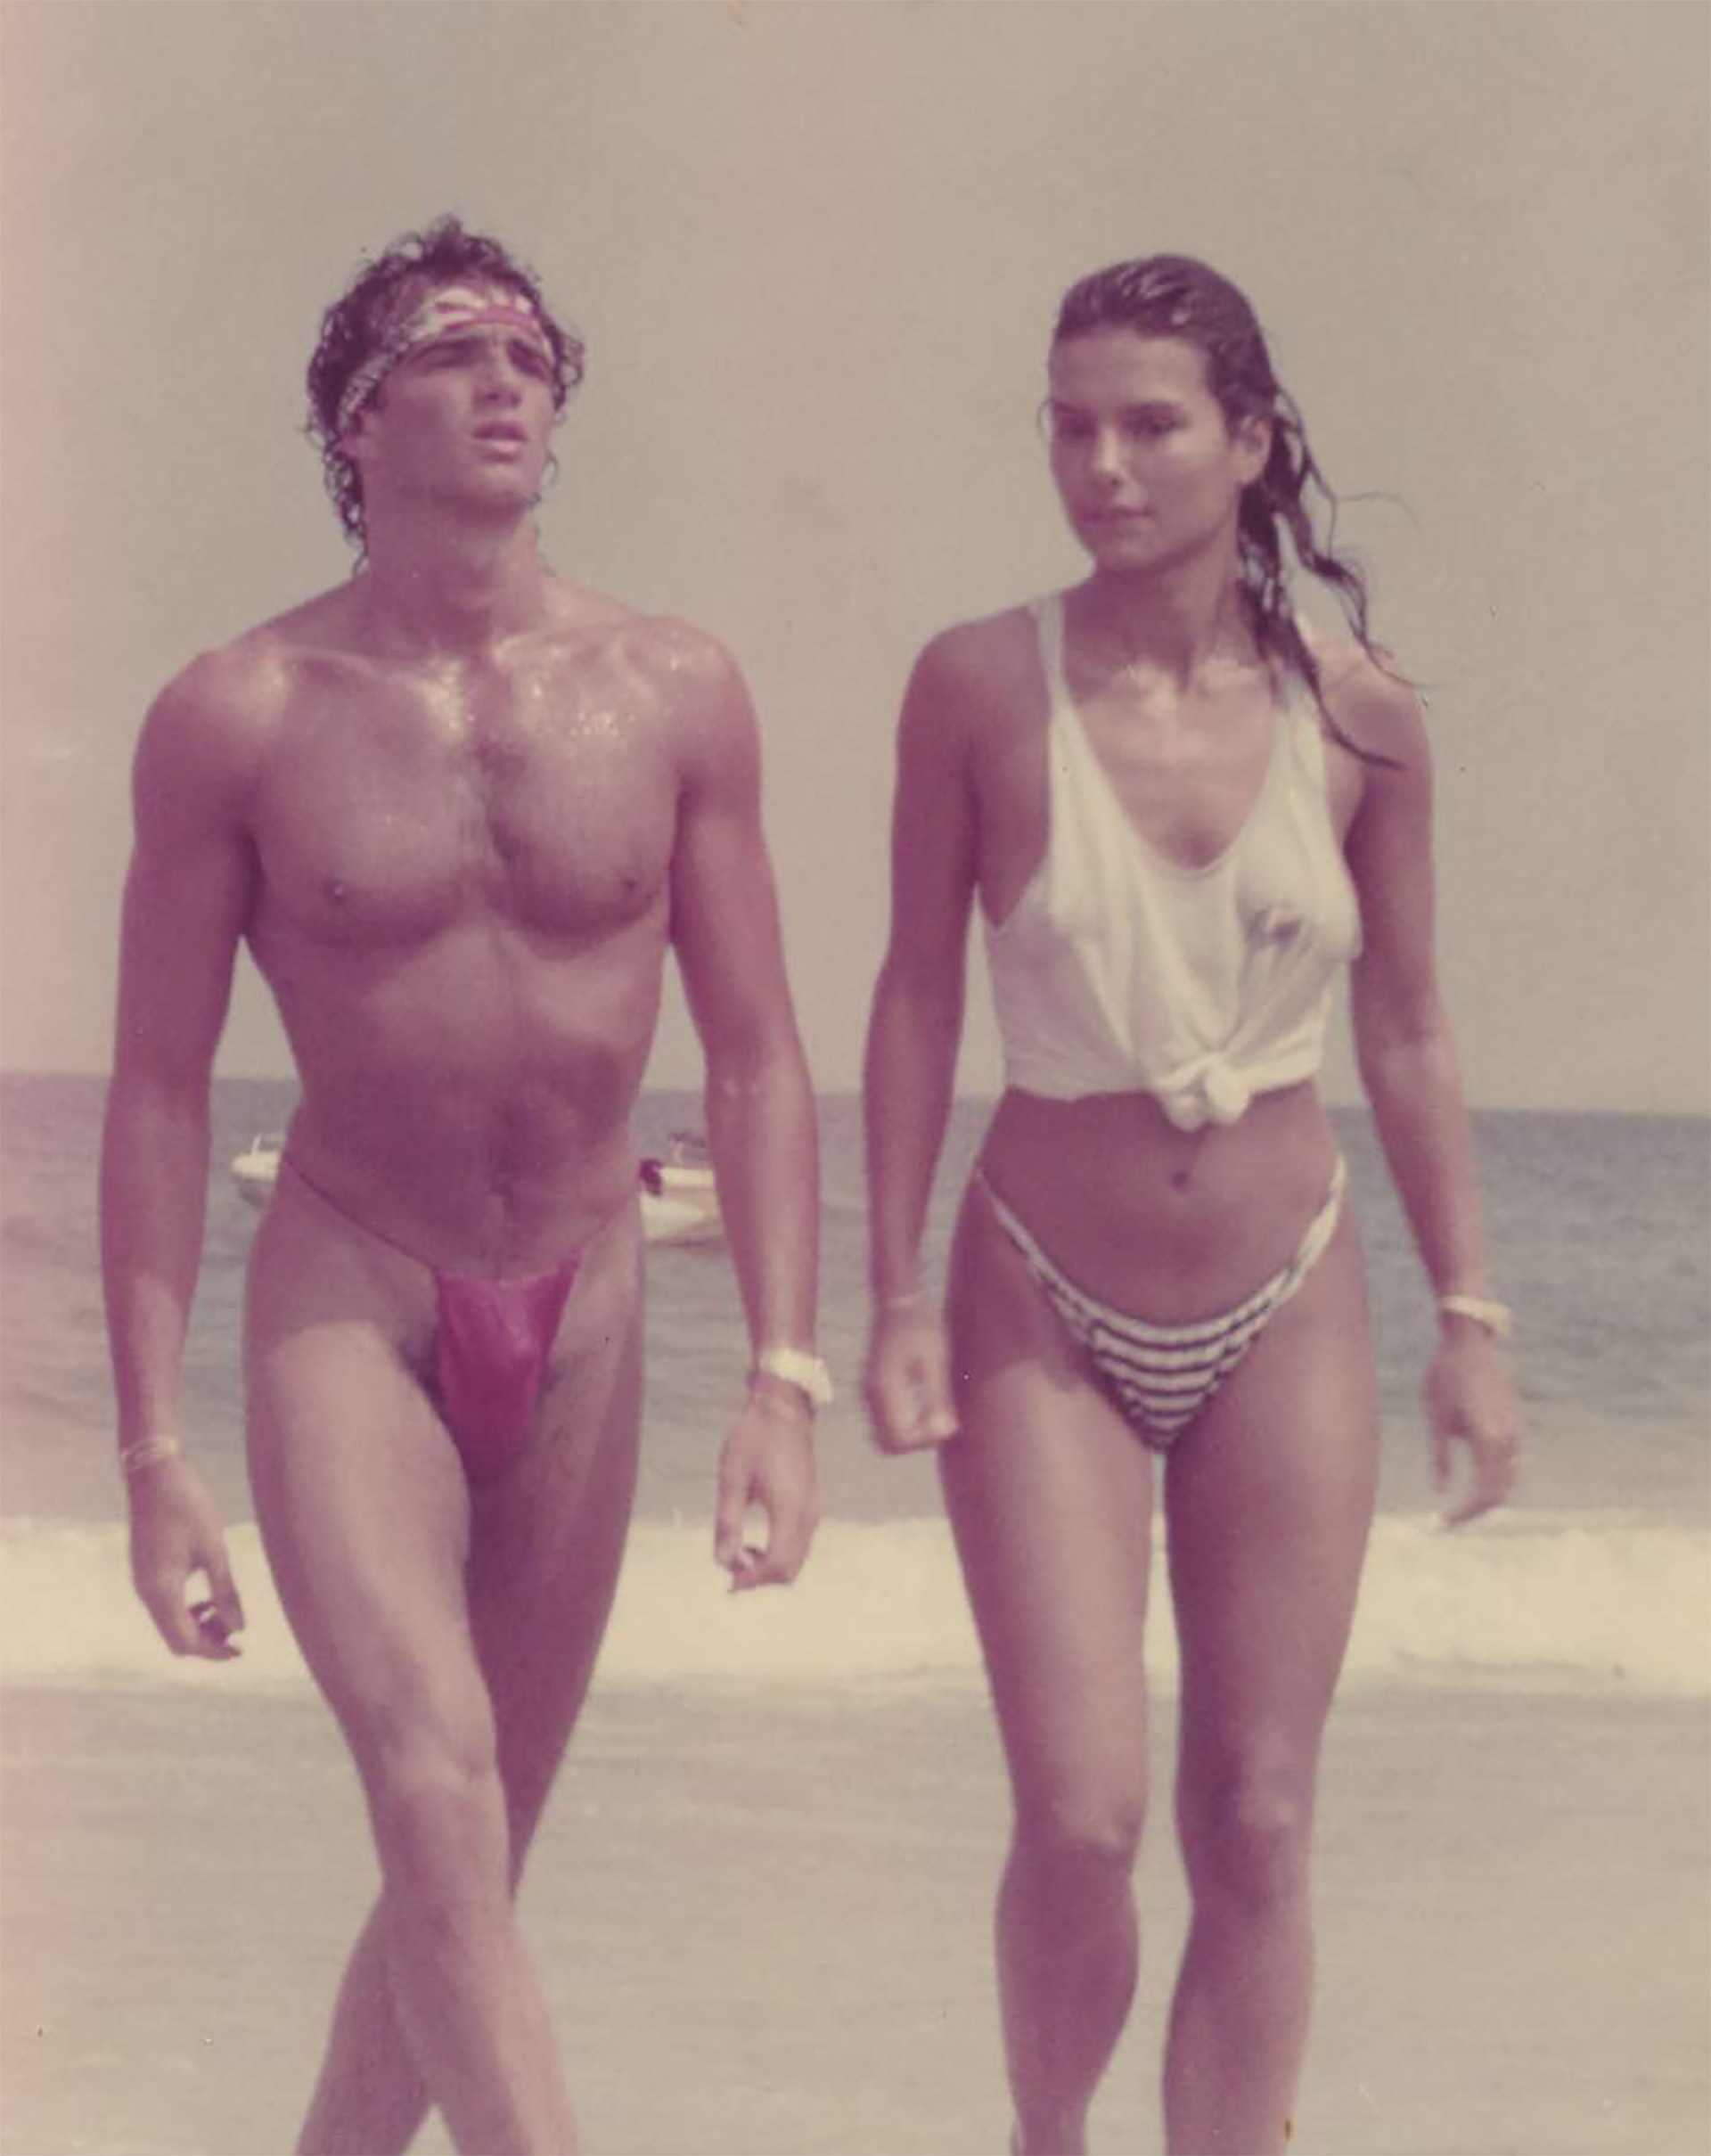 Alan Faena en los 80, caminando por las playas de Ibiza junto a su novia alemana, en una fotografía que aparece en un libro sobre su vida, editado por la prestigiosa Casa Rizzoli